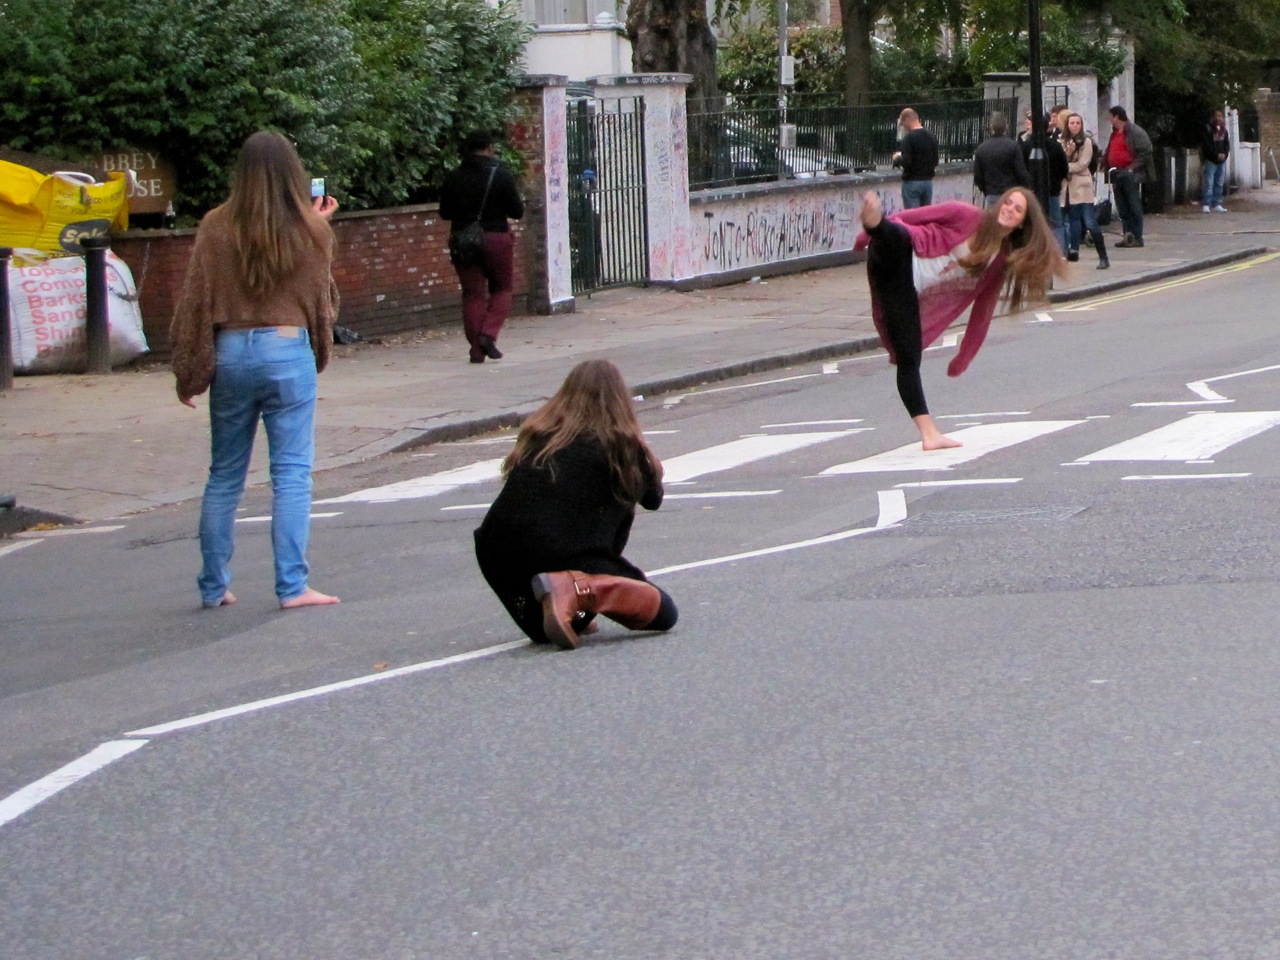 The Urban Explorer: Danger, Danger: Crossing Abbey Road